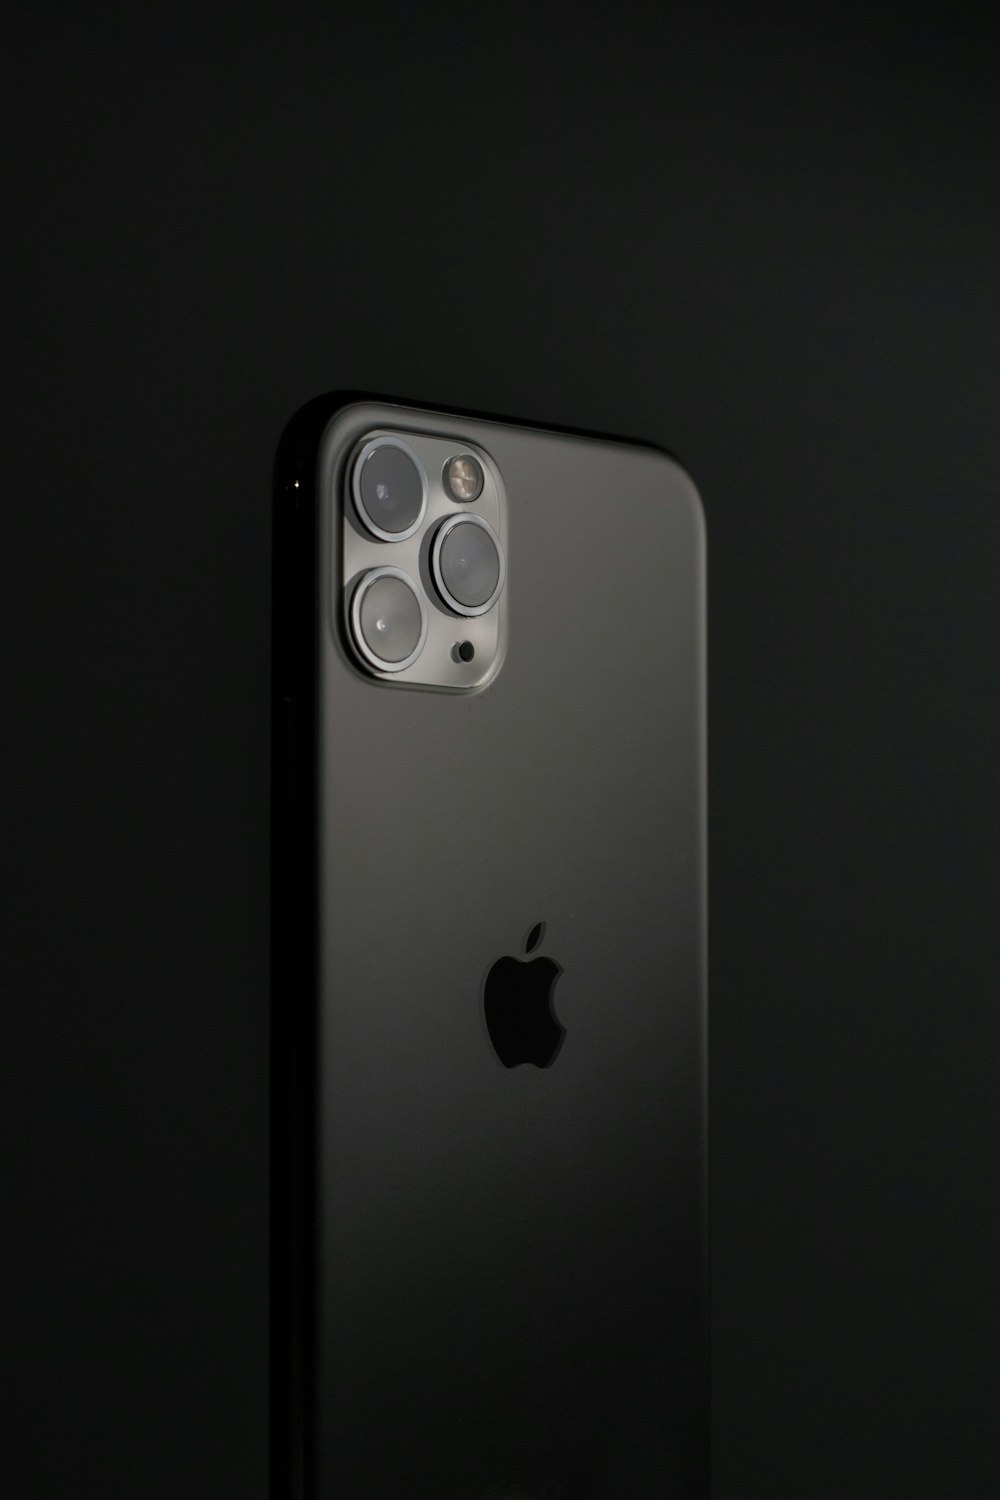 iPhone 6 plateado sobre superficie negra